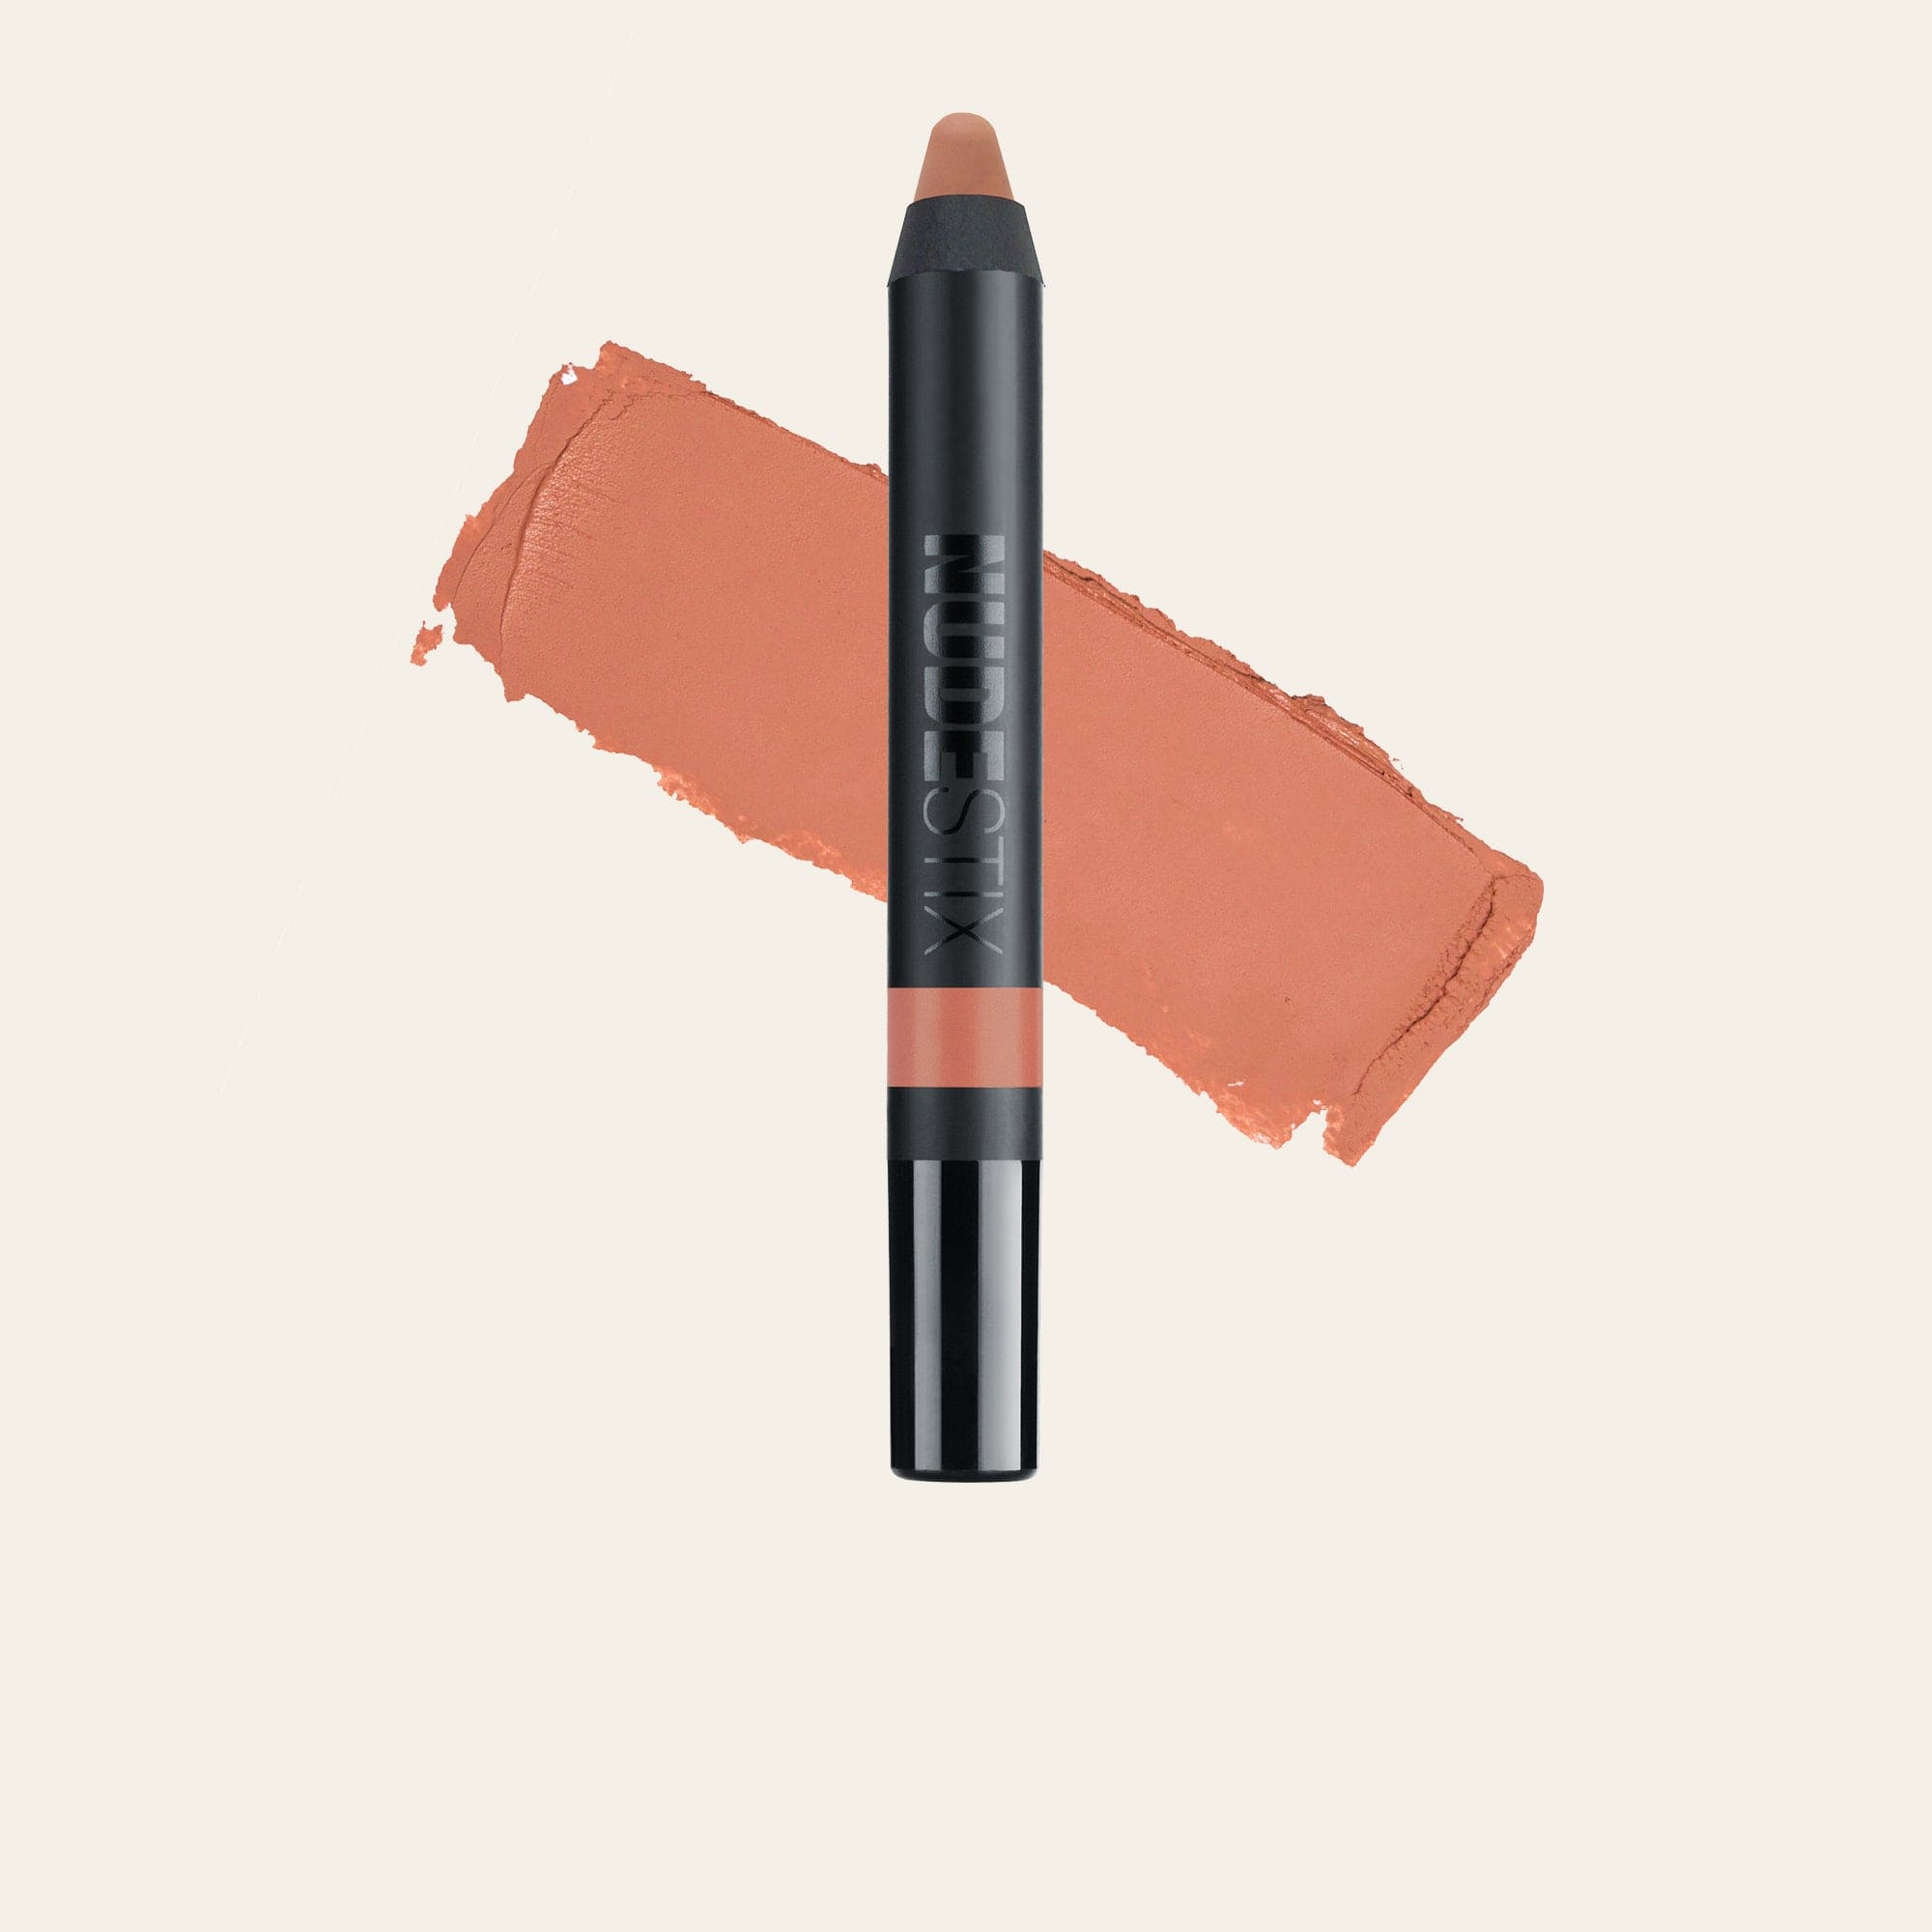 Intense Matte Lip + Cheek - Matte Lipstick Pencil